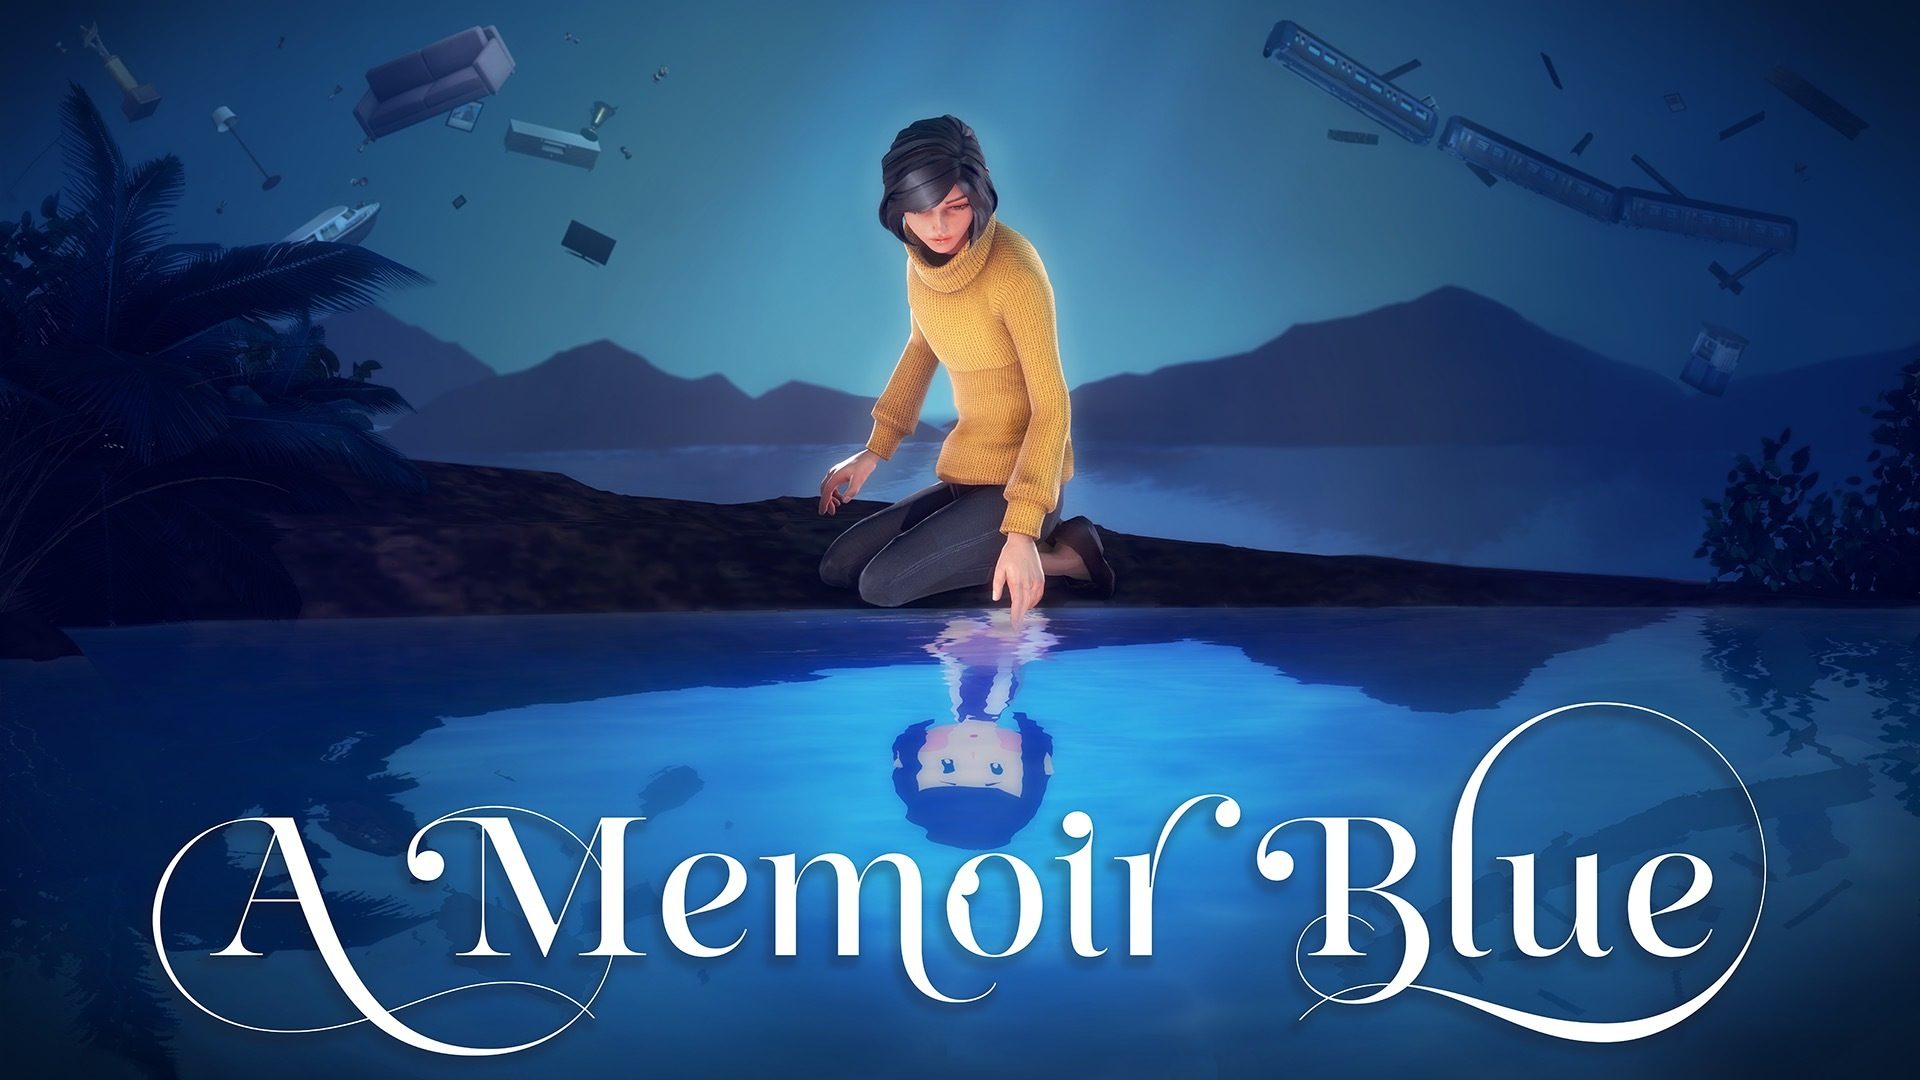 A-Memoir-Blue-featured-image.jpg